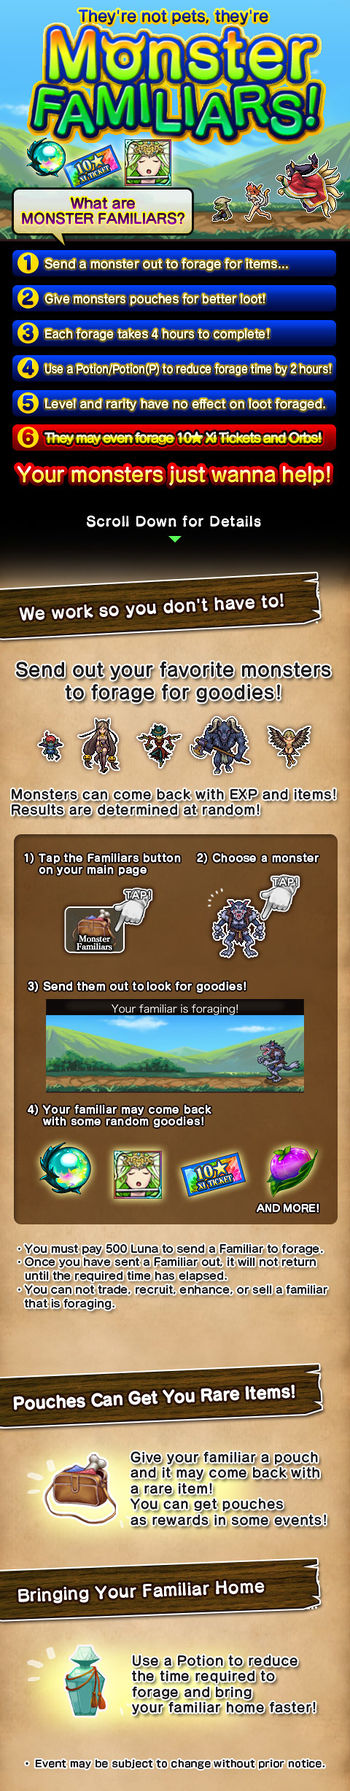 Monster Familiars 6 release.jpg